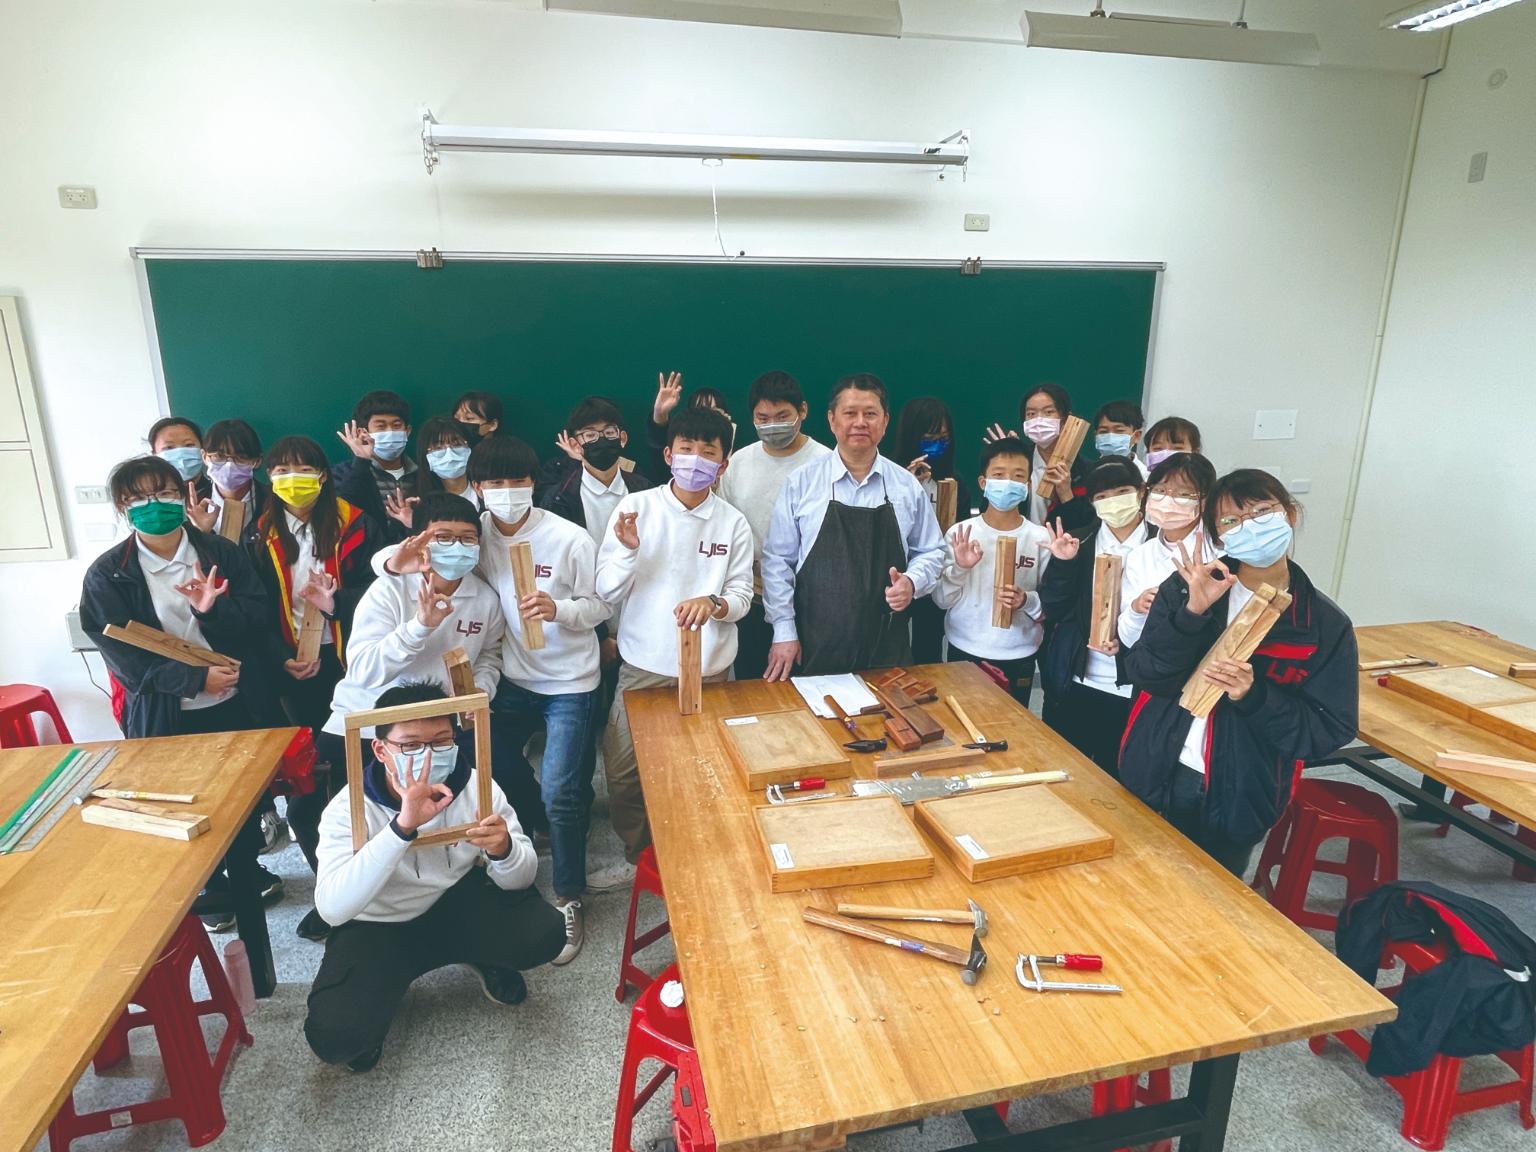 工藝課程帶領同學們在創作中快樂學習／鹿江國際中小學提供。